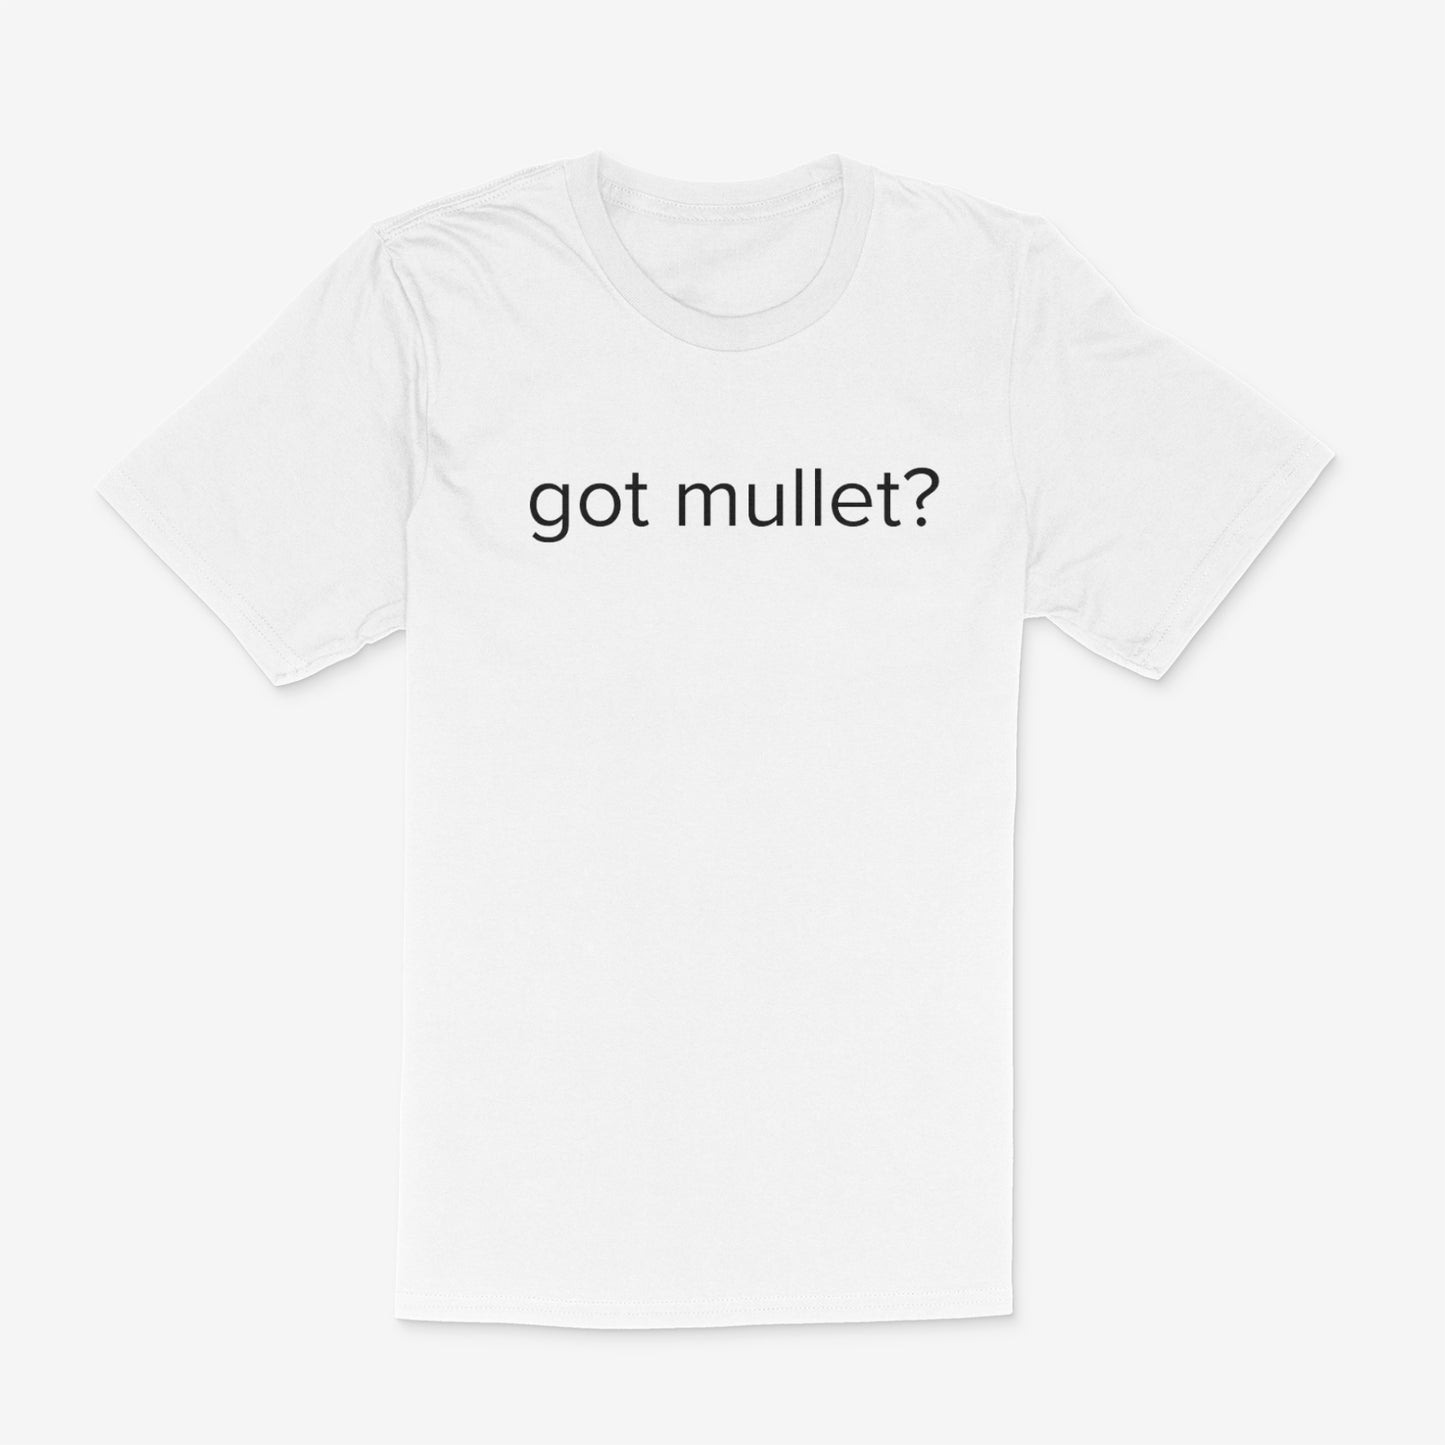 got mullet? Tee